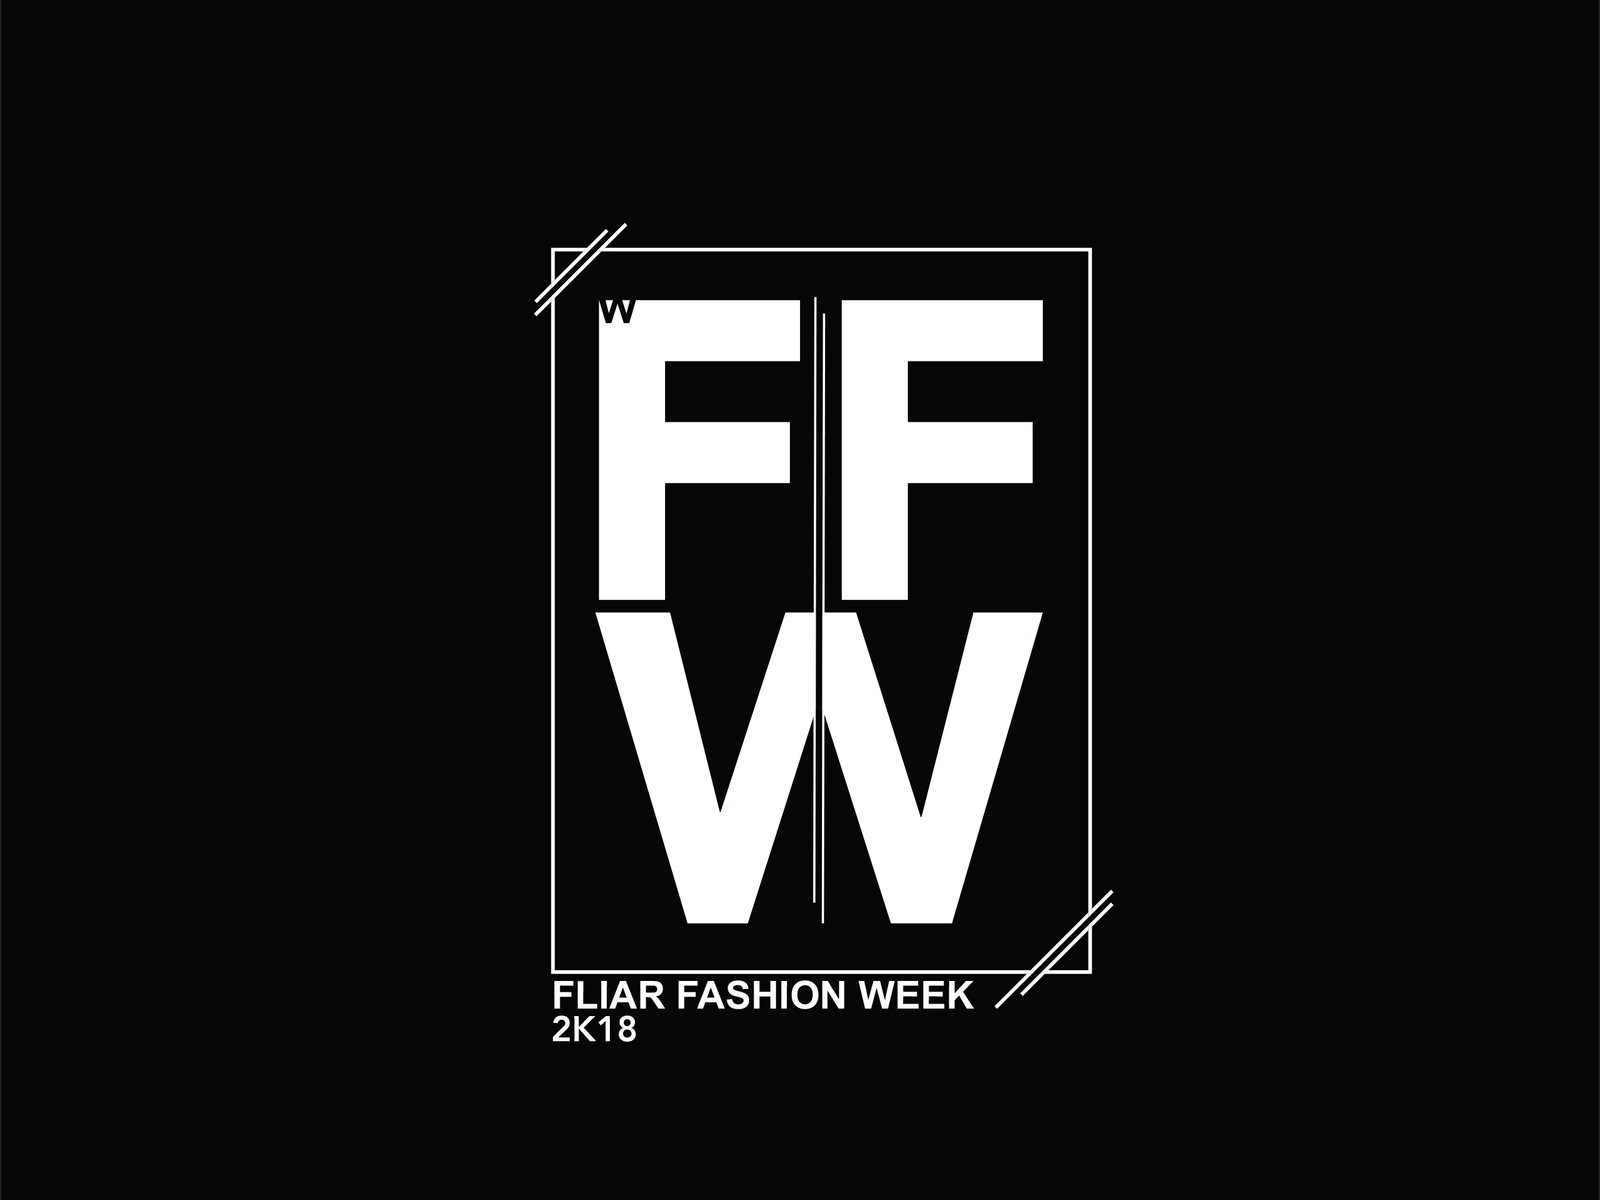 FFW Fashion Show - Logo Design by Sarath Kumar on Dribbble